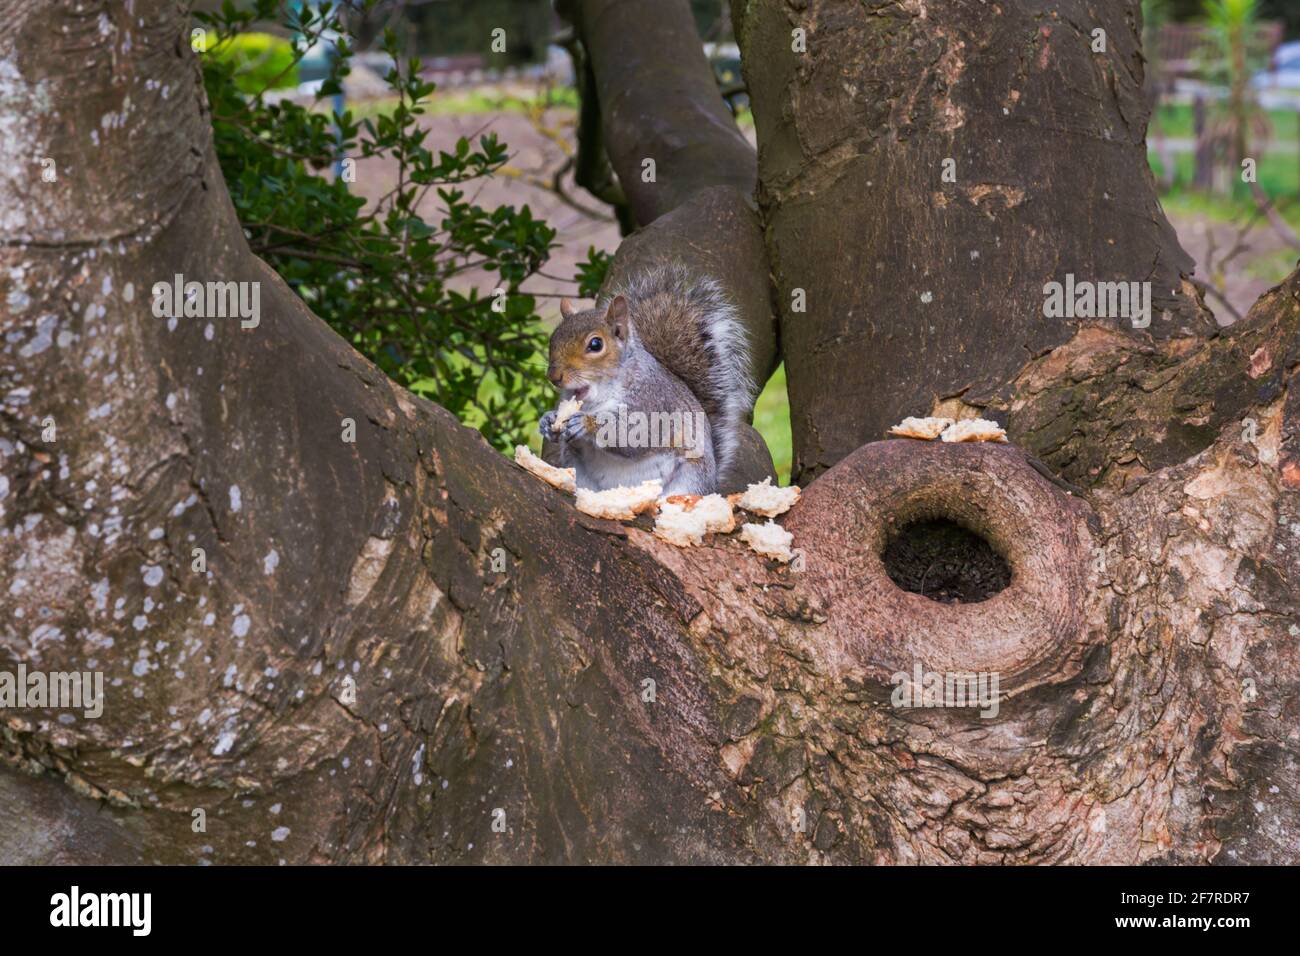 Écureuil gris assis dans un arbre mangeant du pain à Bournemouth, Dorset Royaume-Uni en avril Banque D'Images